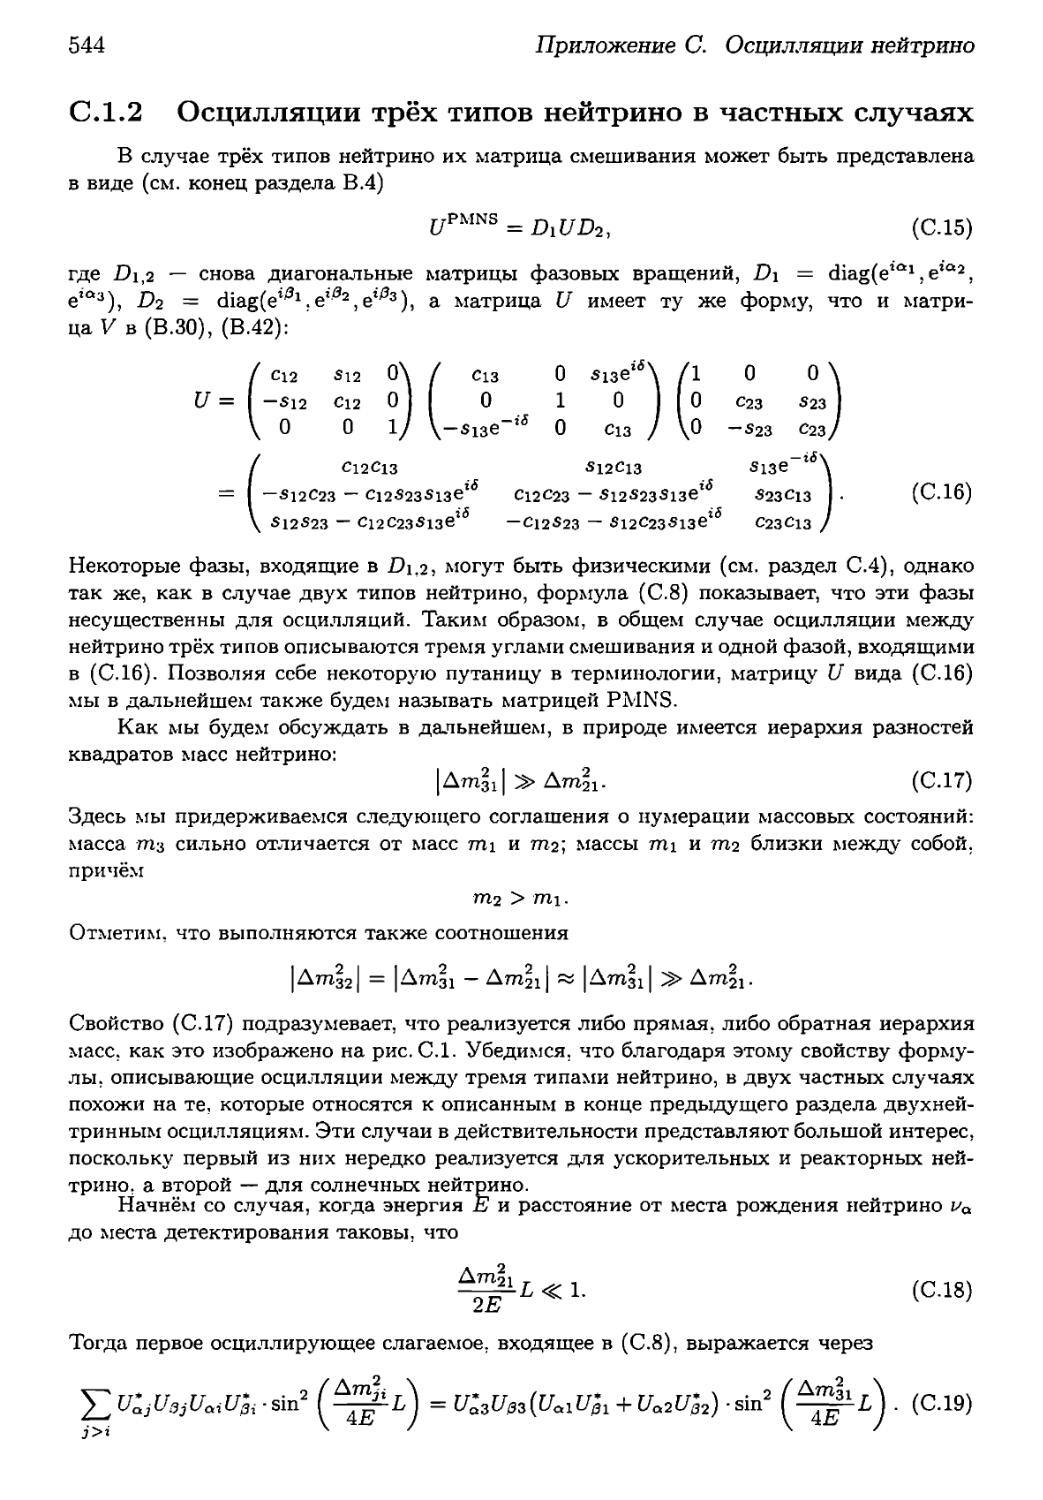 С.1.2. Осцилляции трёх типов нейтрино в частных случаях